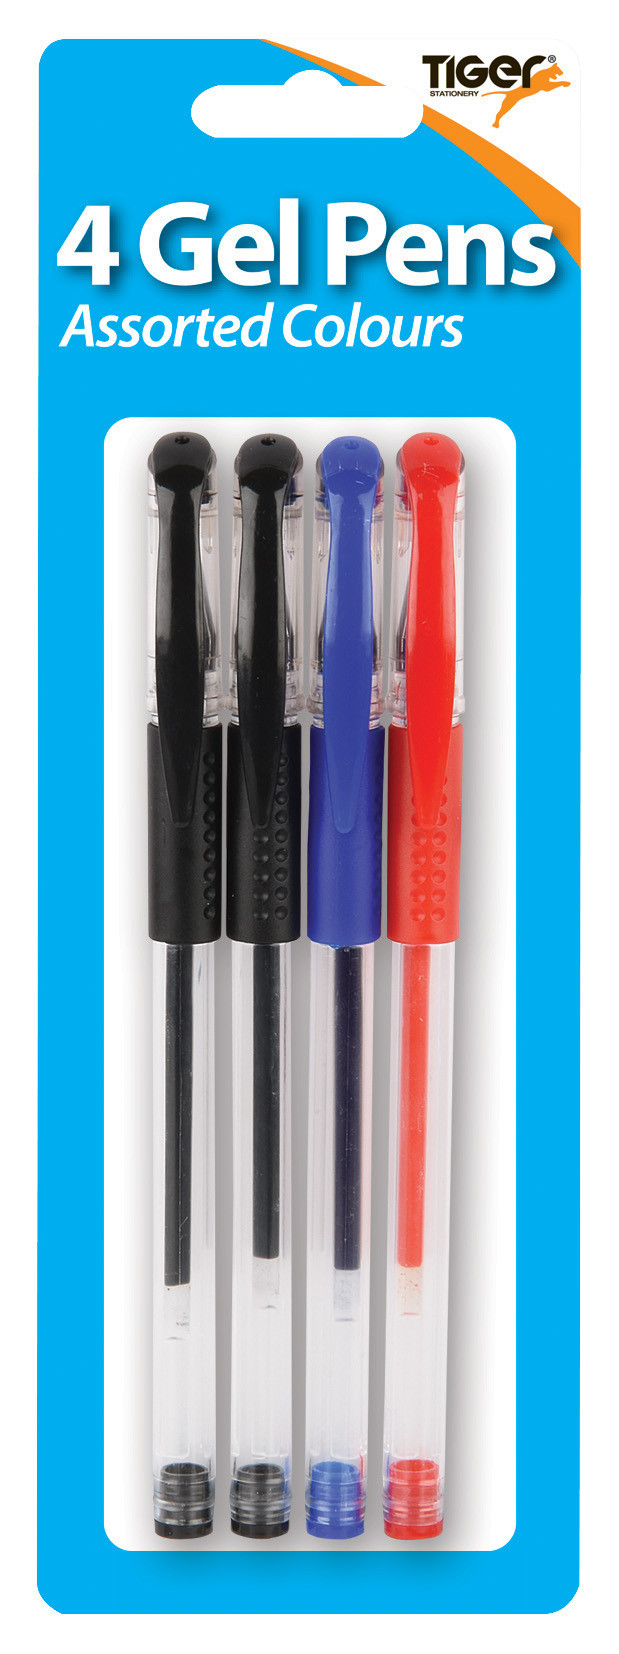 Blister Carded Gel Pens (4)